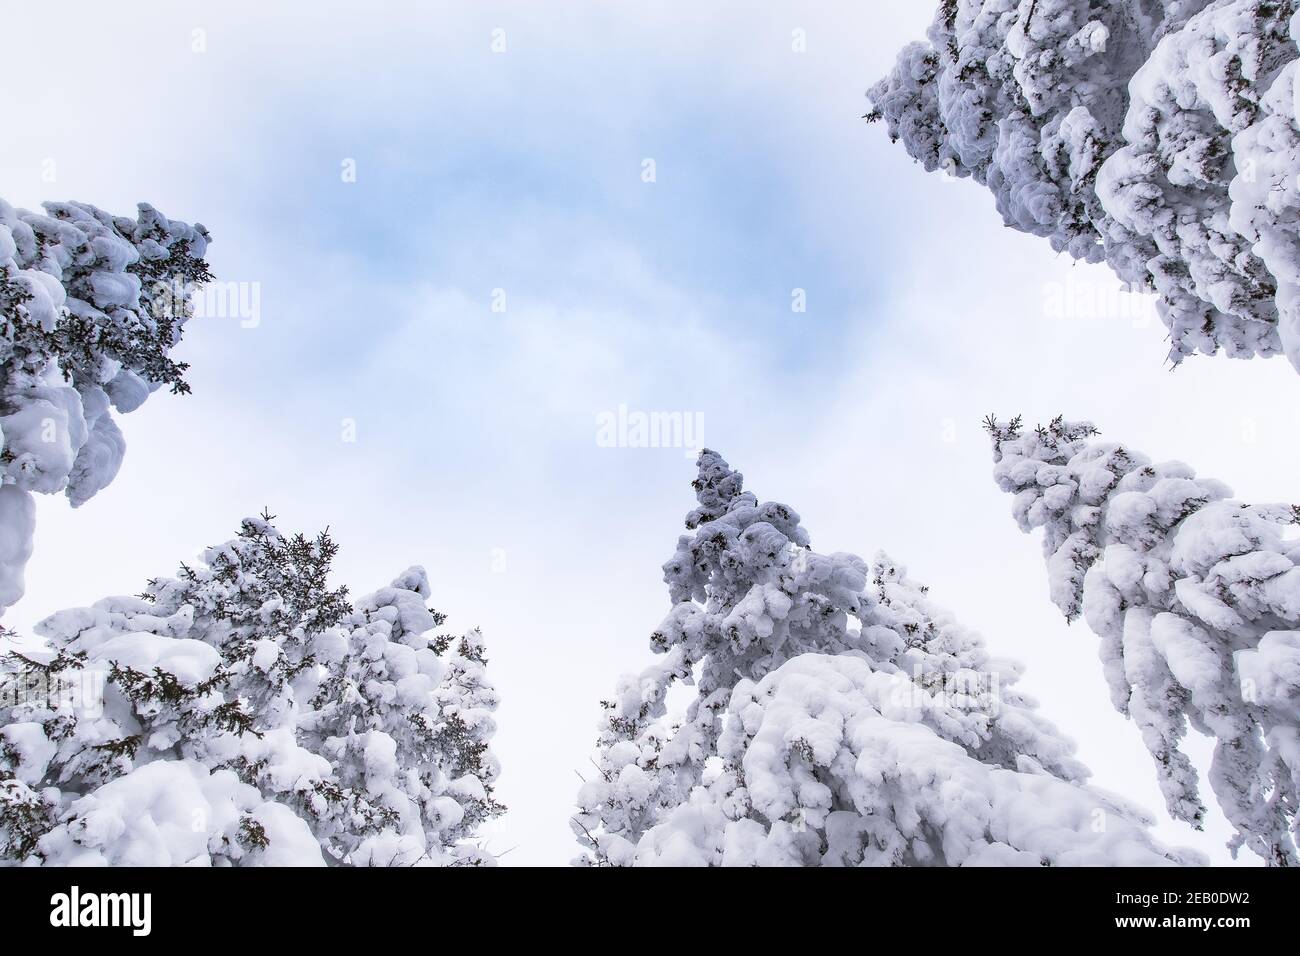 Sommet de sapins enneigés dans un ciel bleu. Forêt d'hiver gelée le jour ensoleillé Banque D'Images